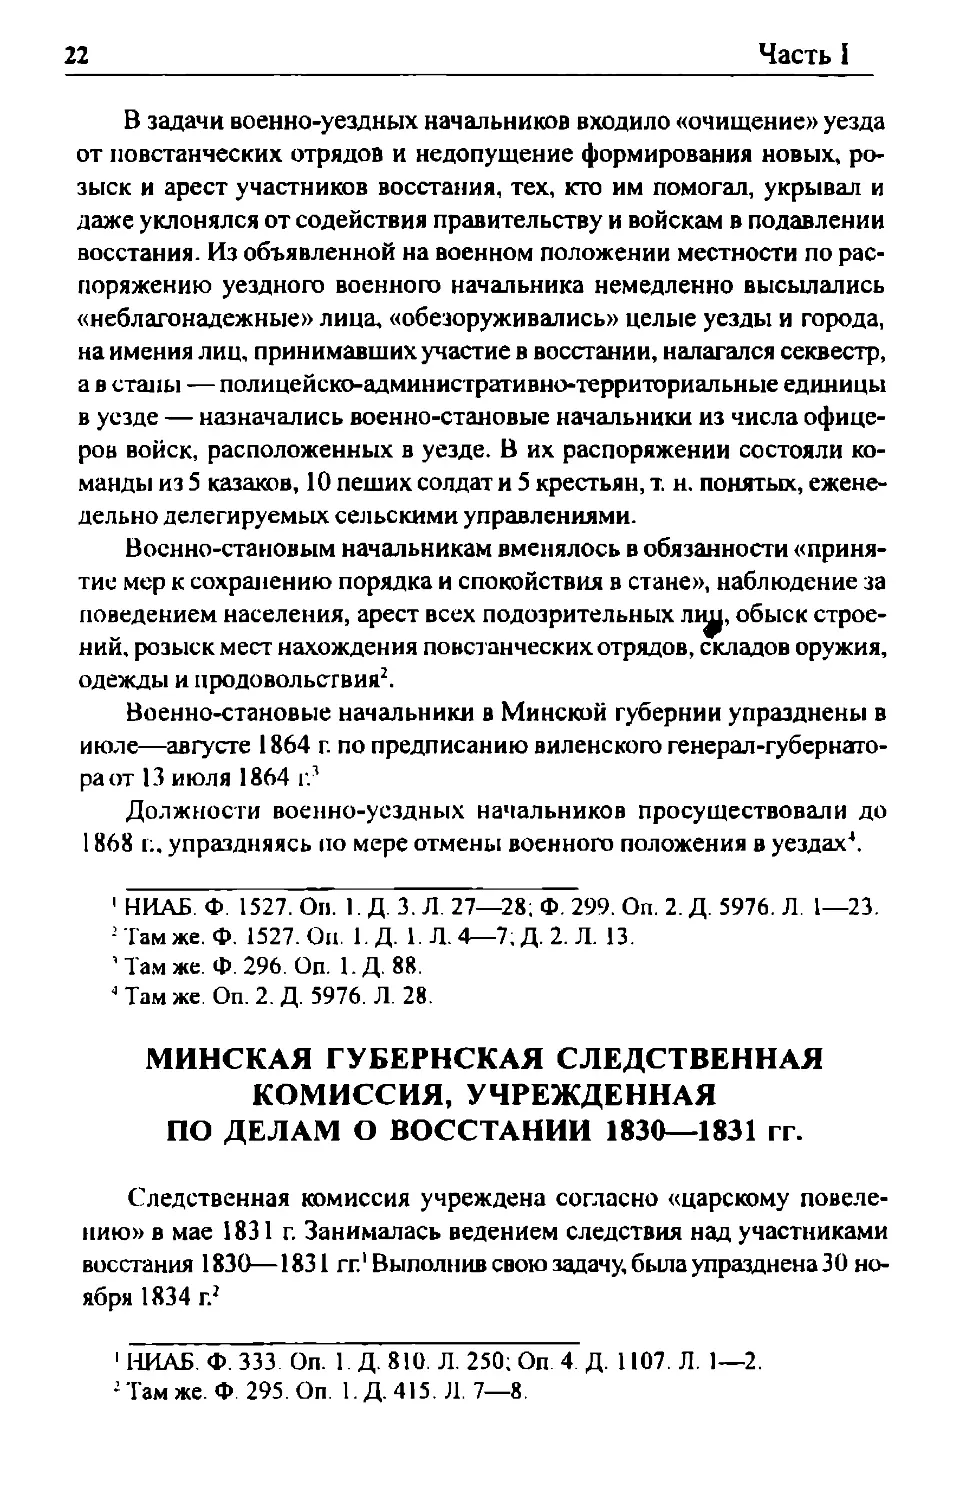 Минская губернская следственная комиссия, учрежденная по делам о восстании 1830—1831 гг.